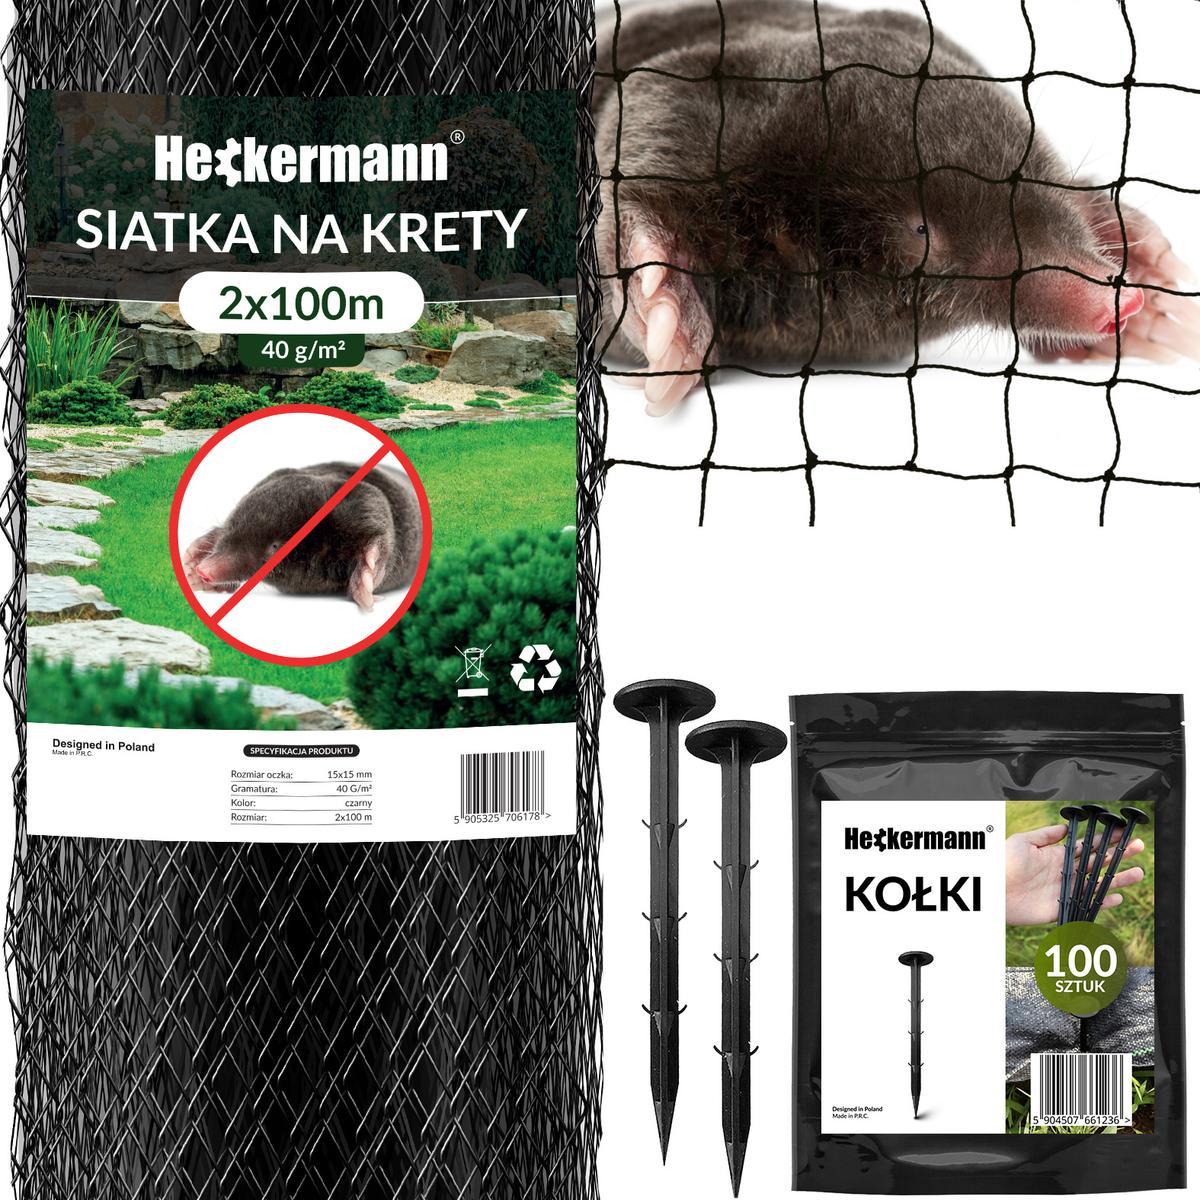 Zestaw Siatka na krety Heckermann 2x100m 40g/m2 + Kołki Czarne 100 szt nr. 1